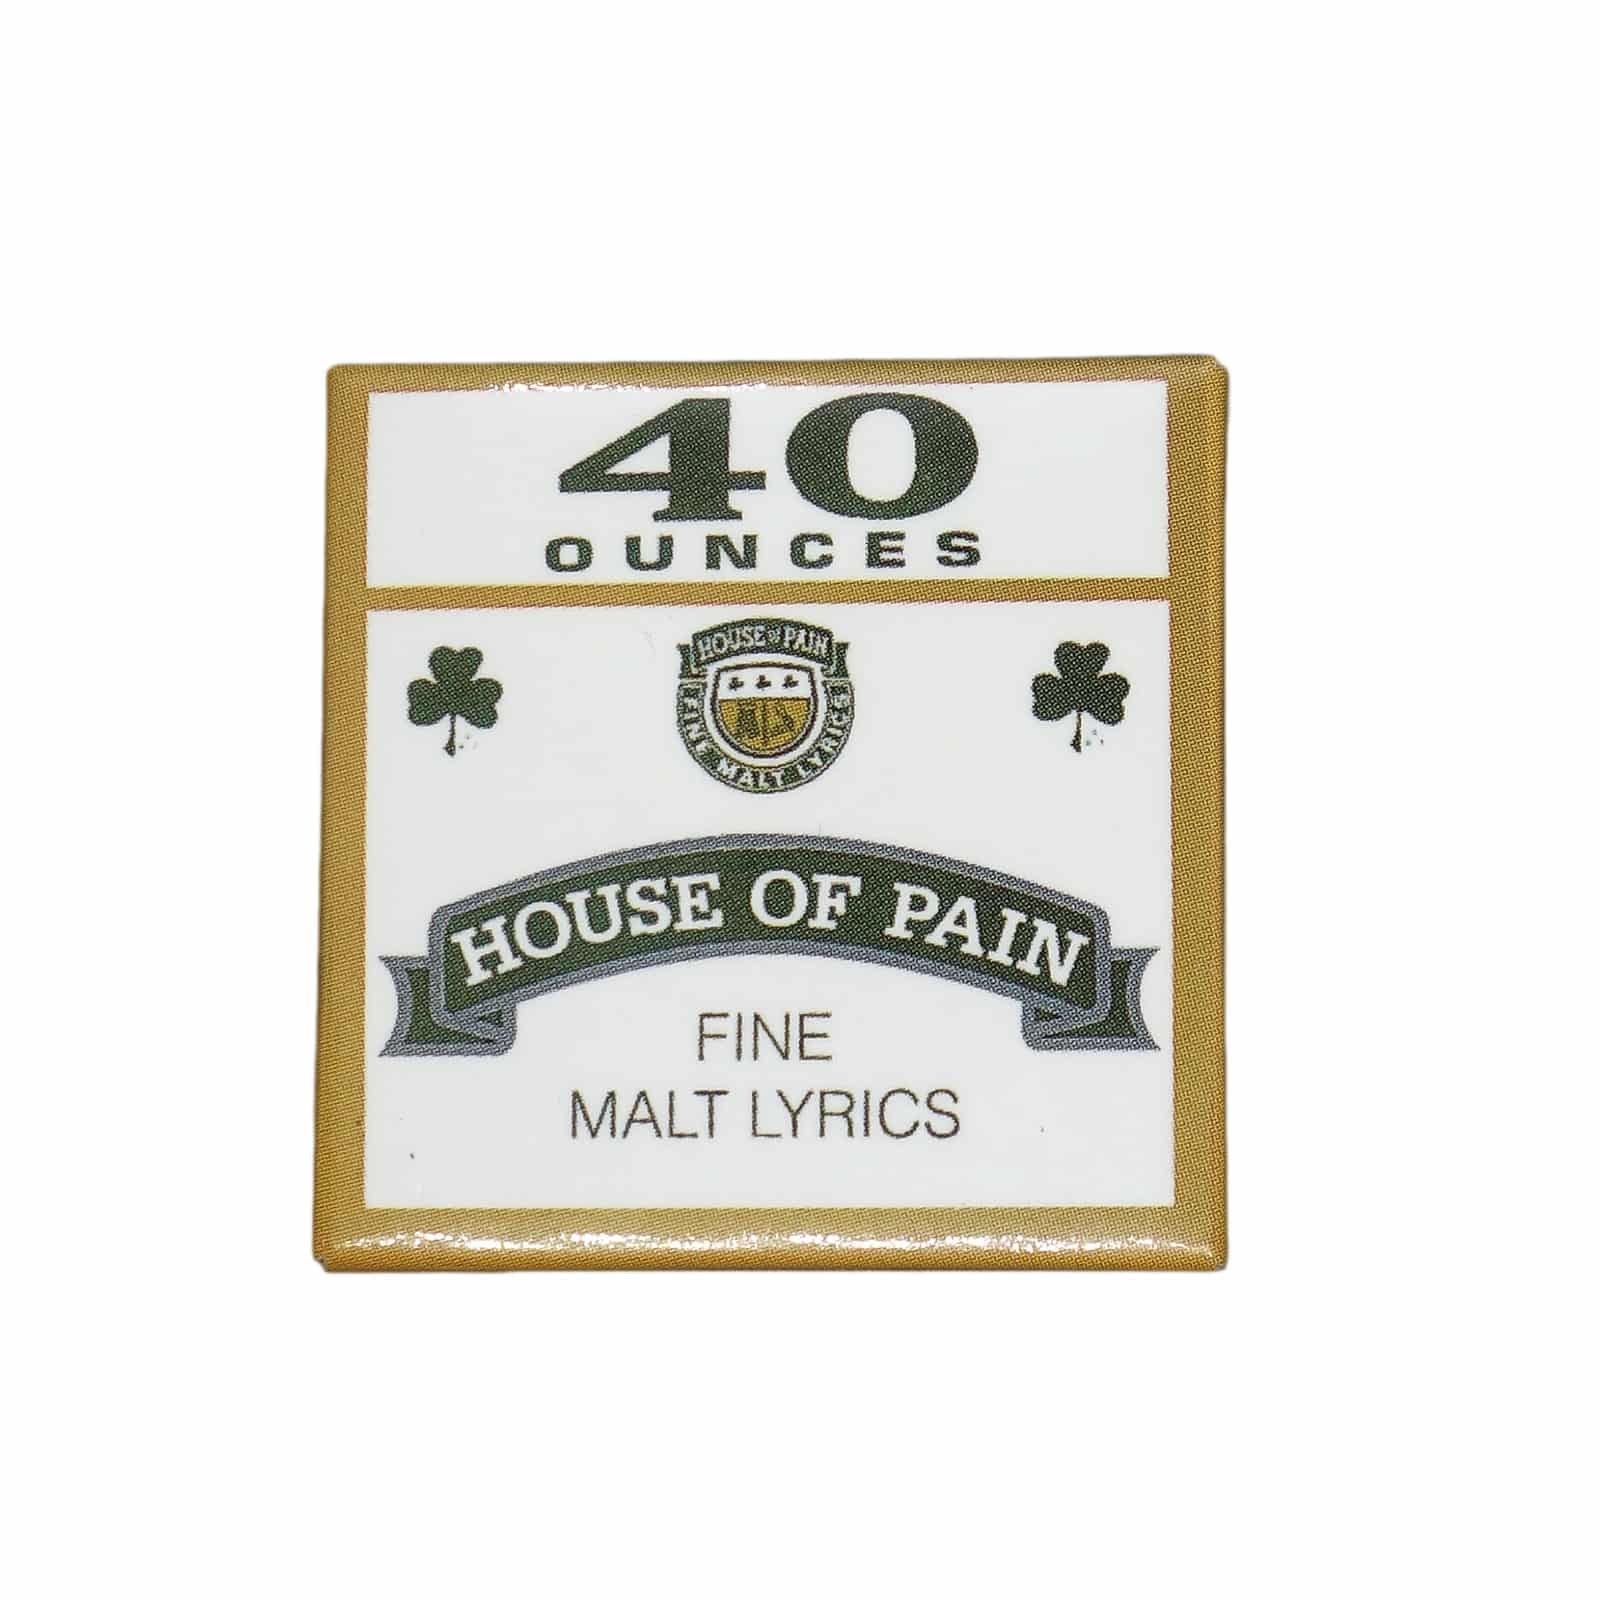 House of Pain ハウス・オブ・ペイン 缶バッジ ヒップホップグループ 1994 USA製